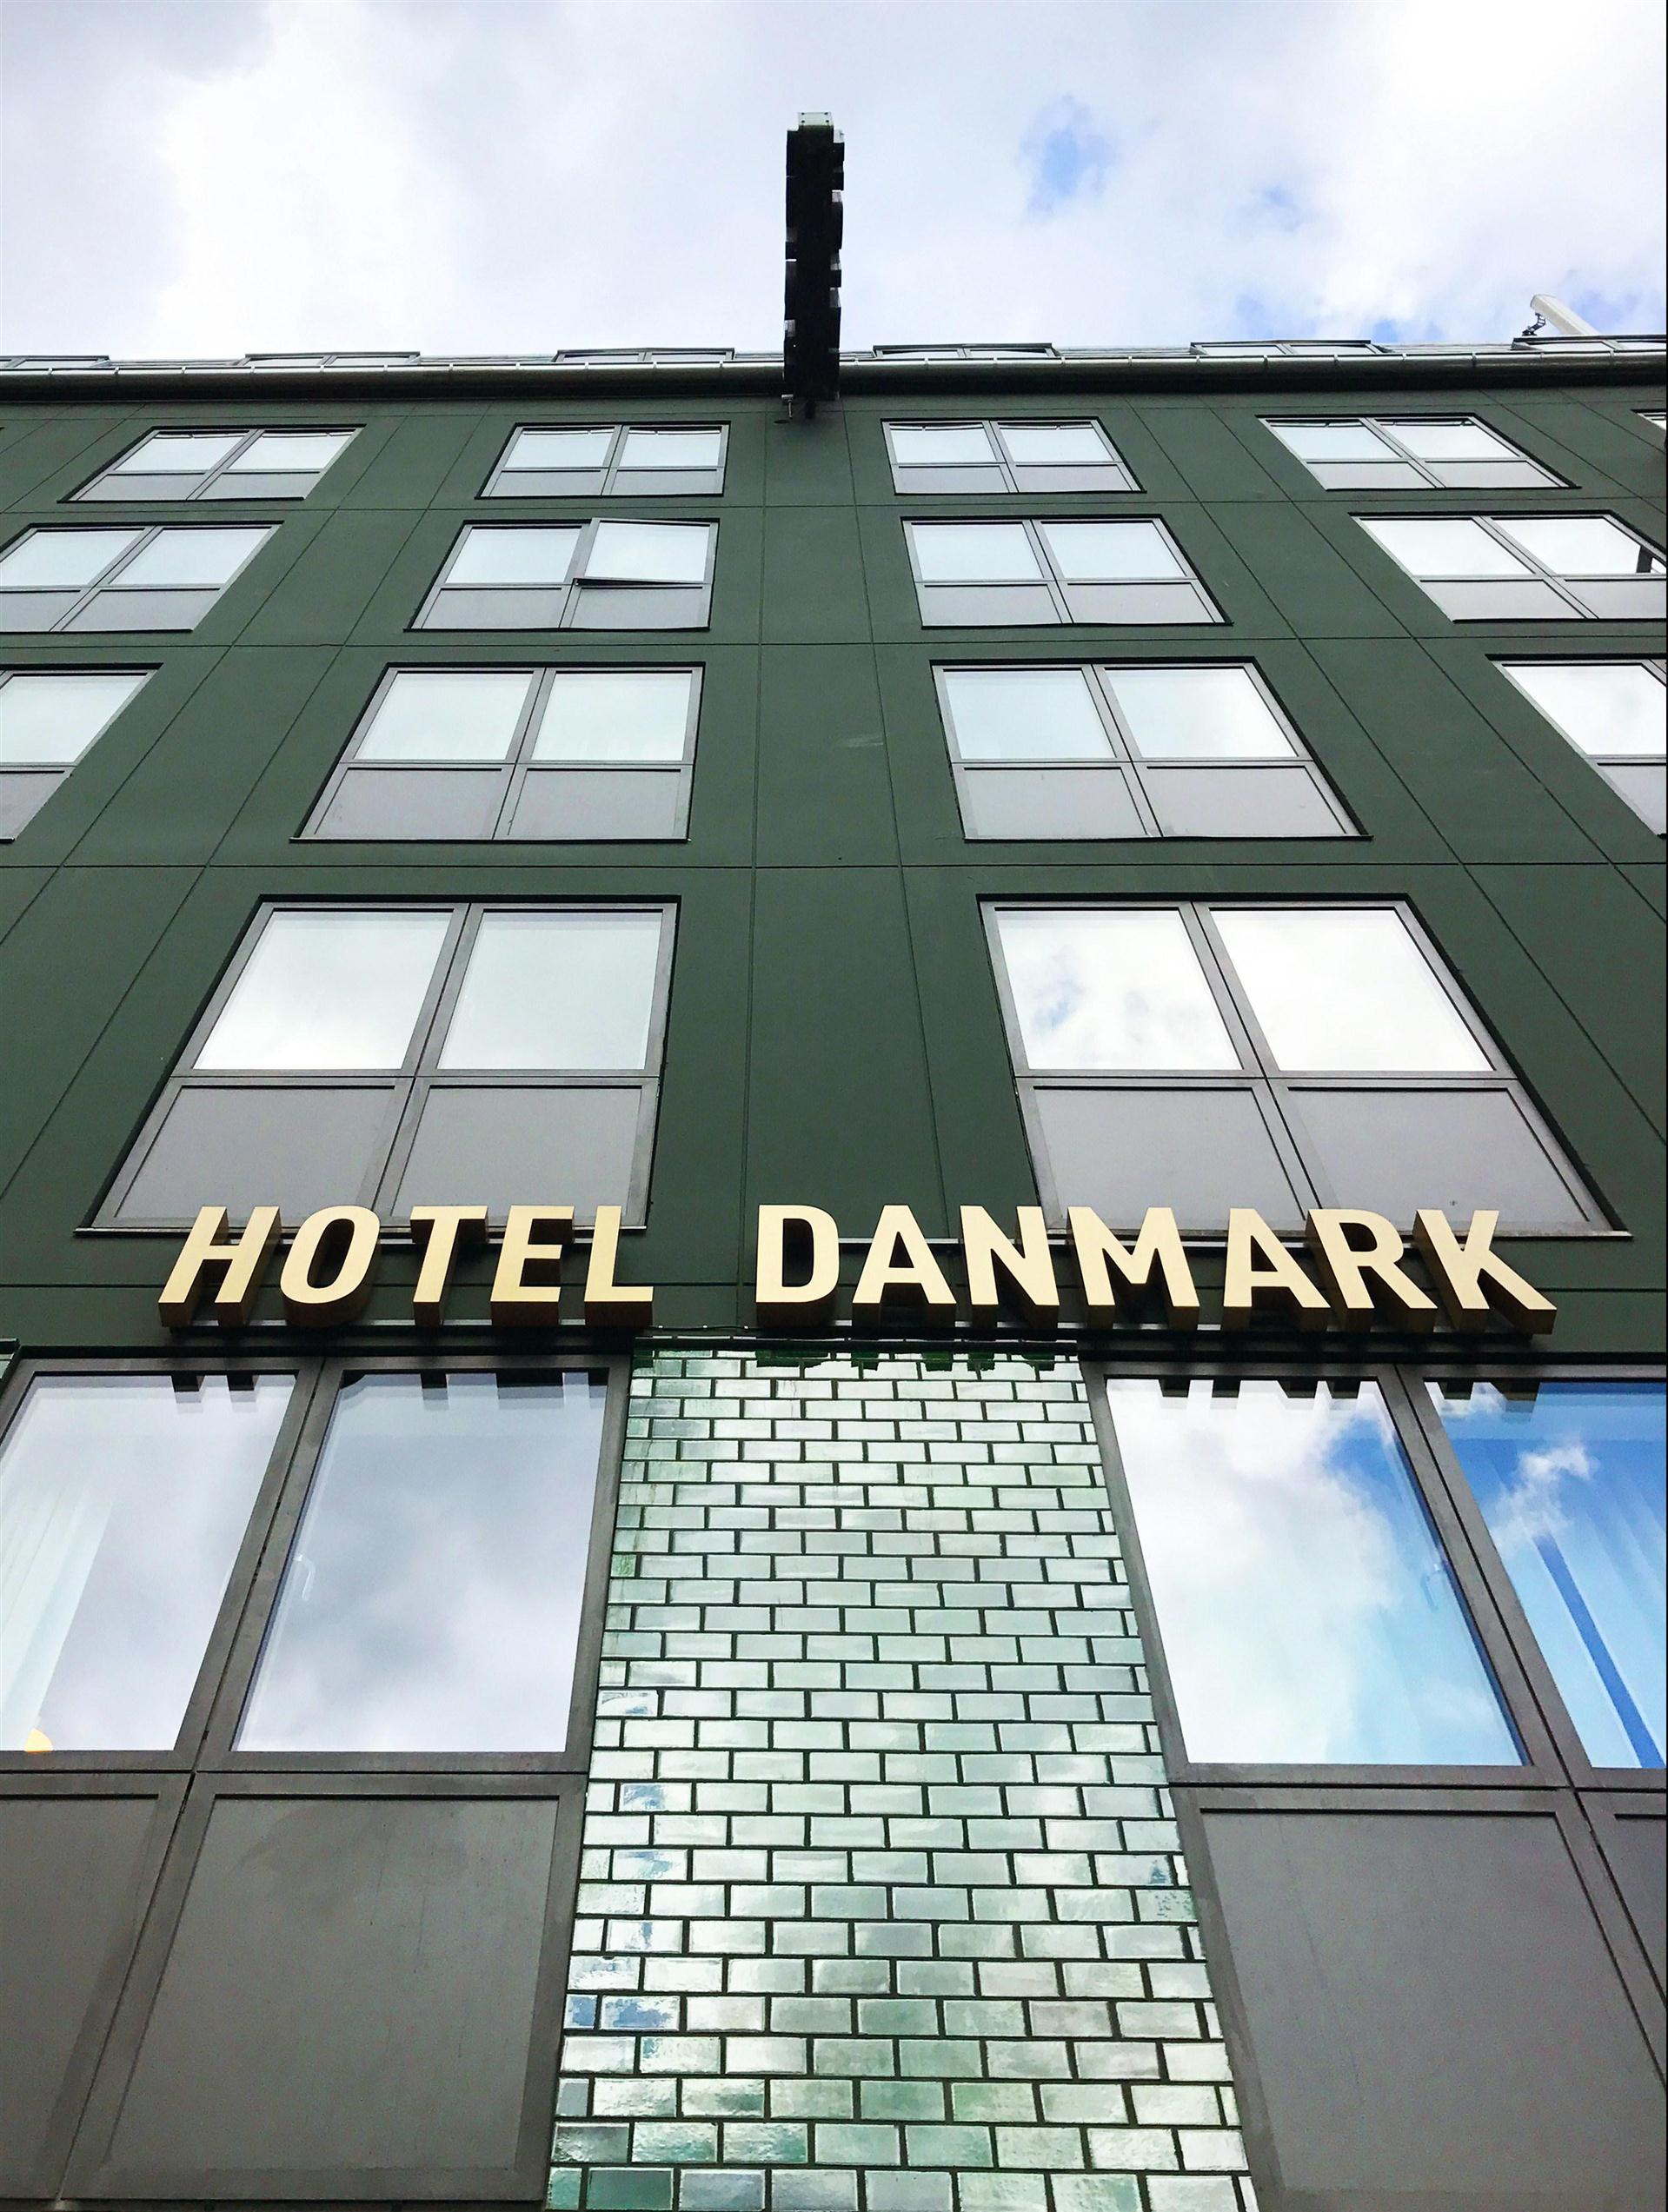 Hotel Danmark in Copenhagen, DK